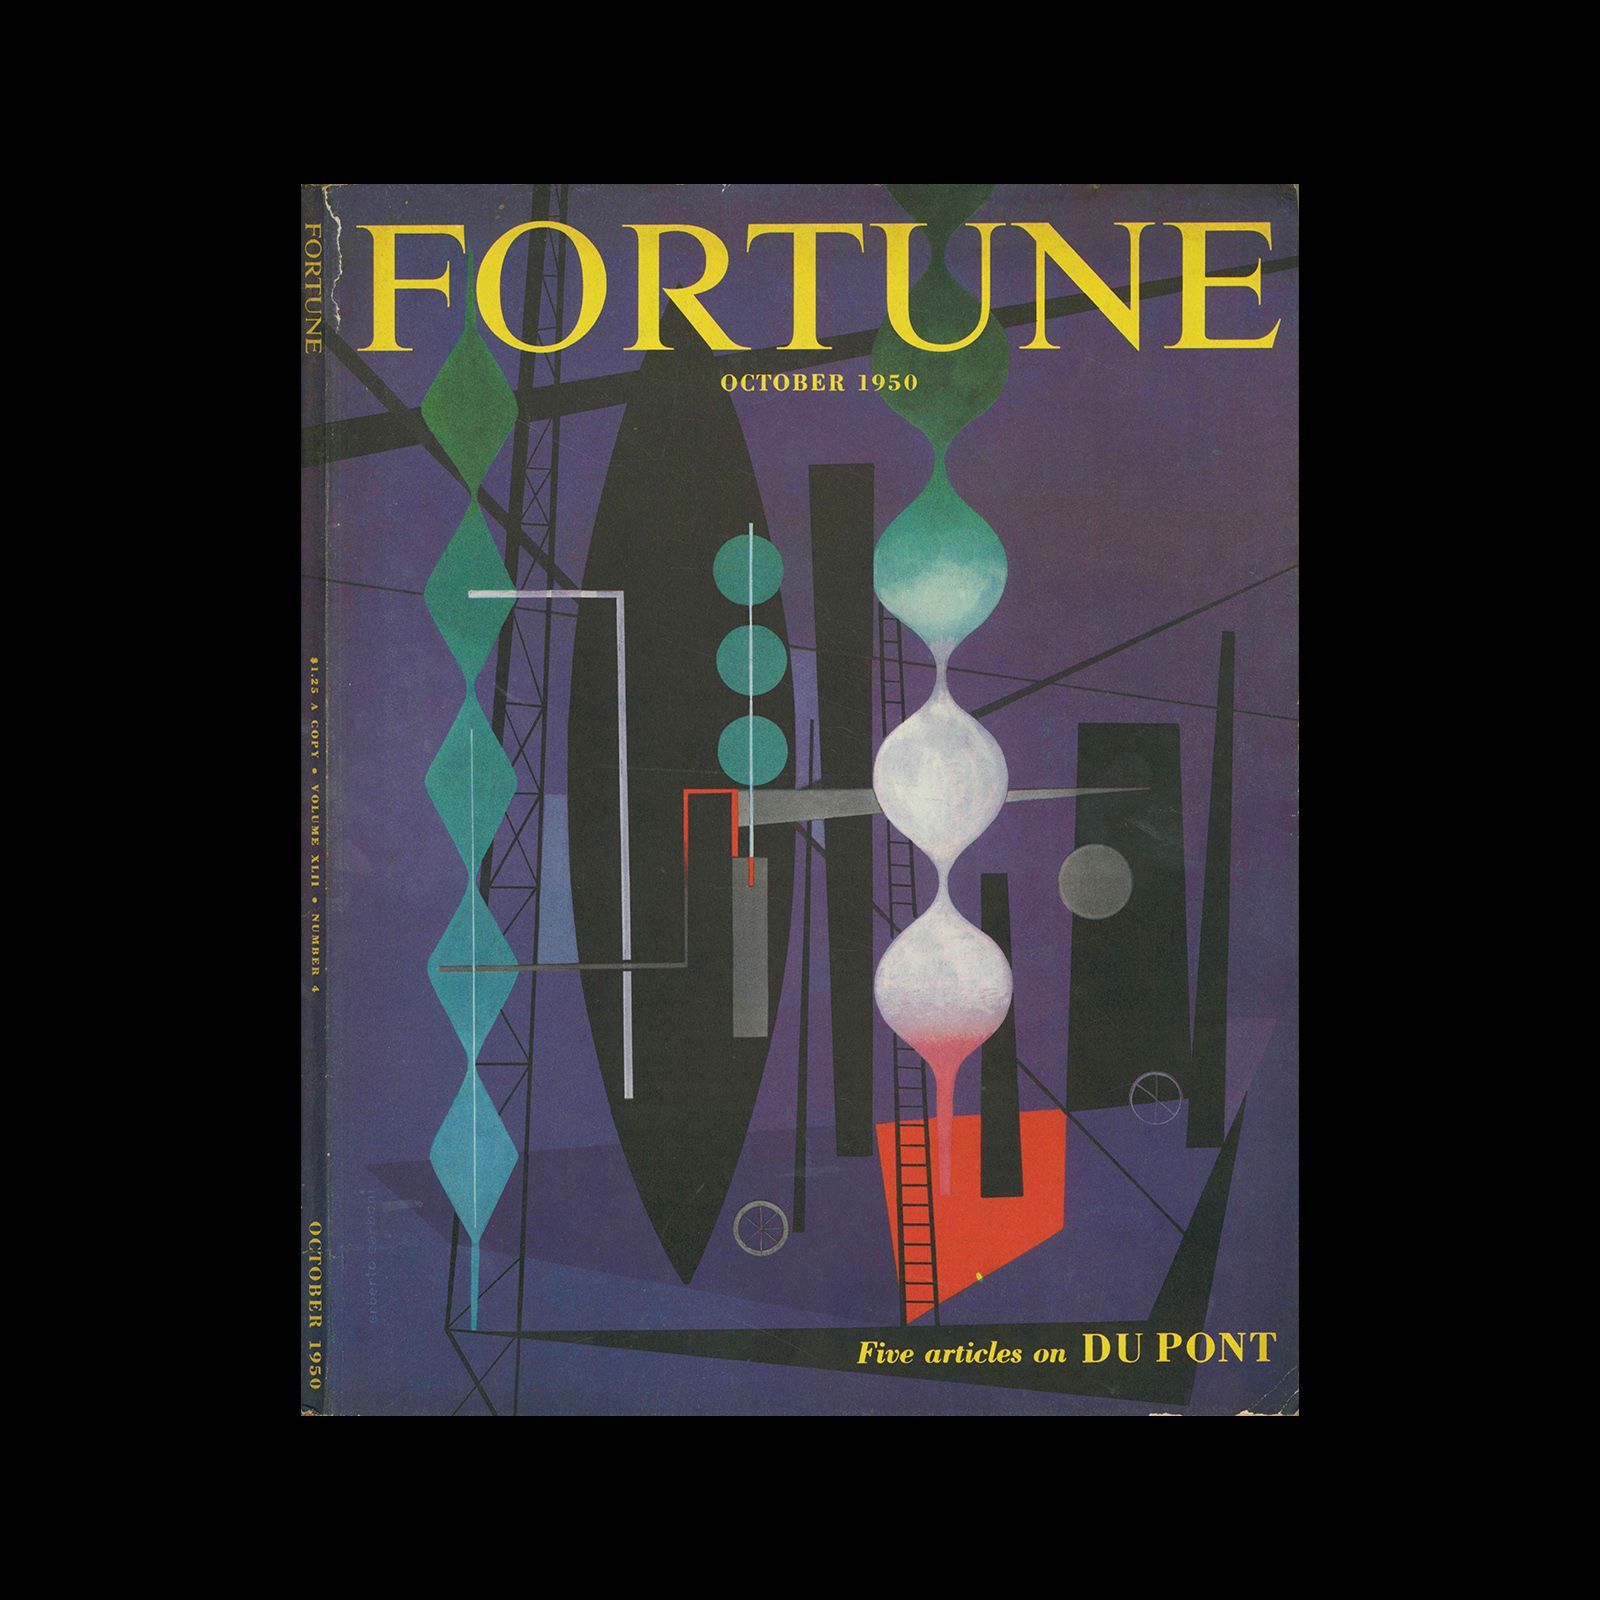 Fortune magazine, Vol. 42, No. 4, 1950. Cover design by Erberto Carboni